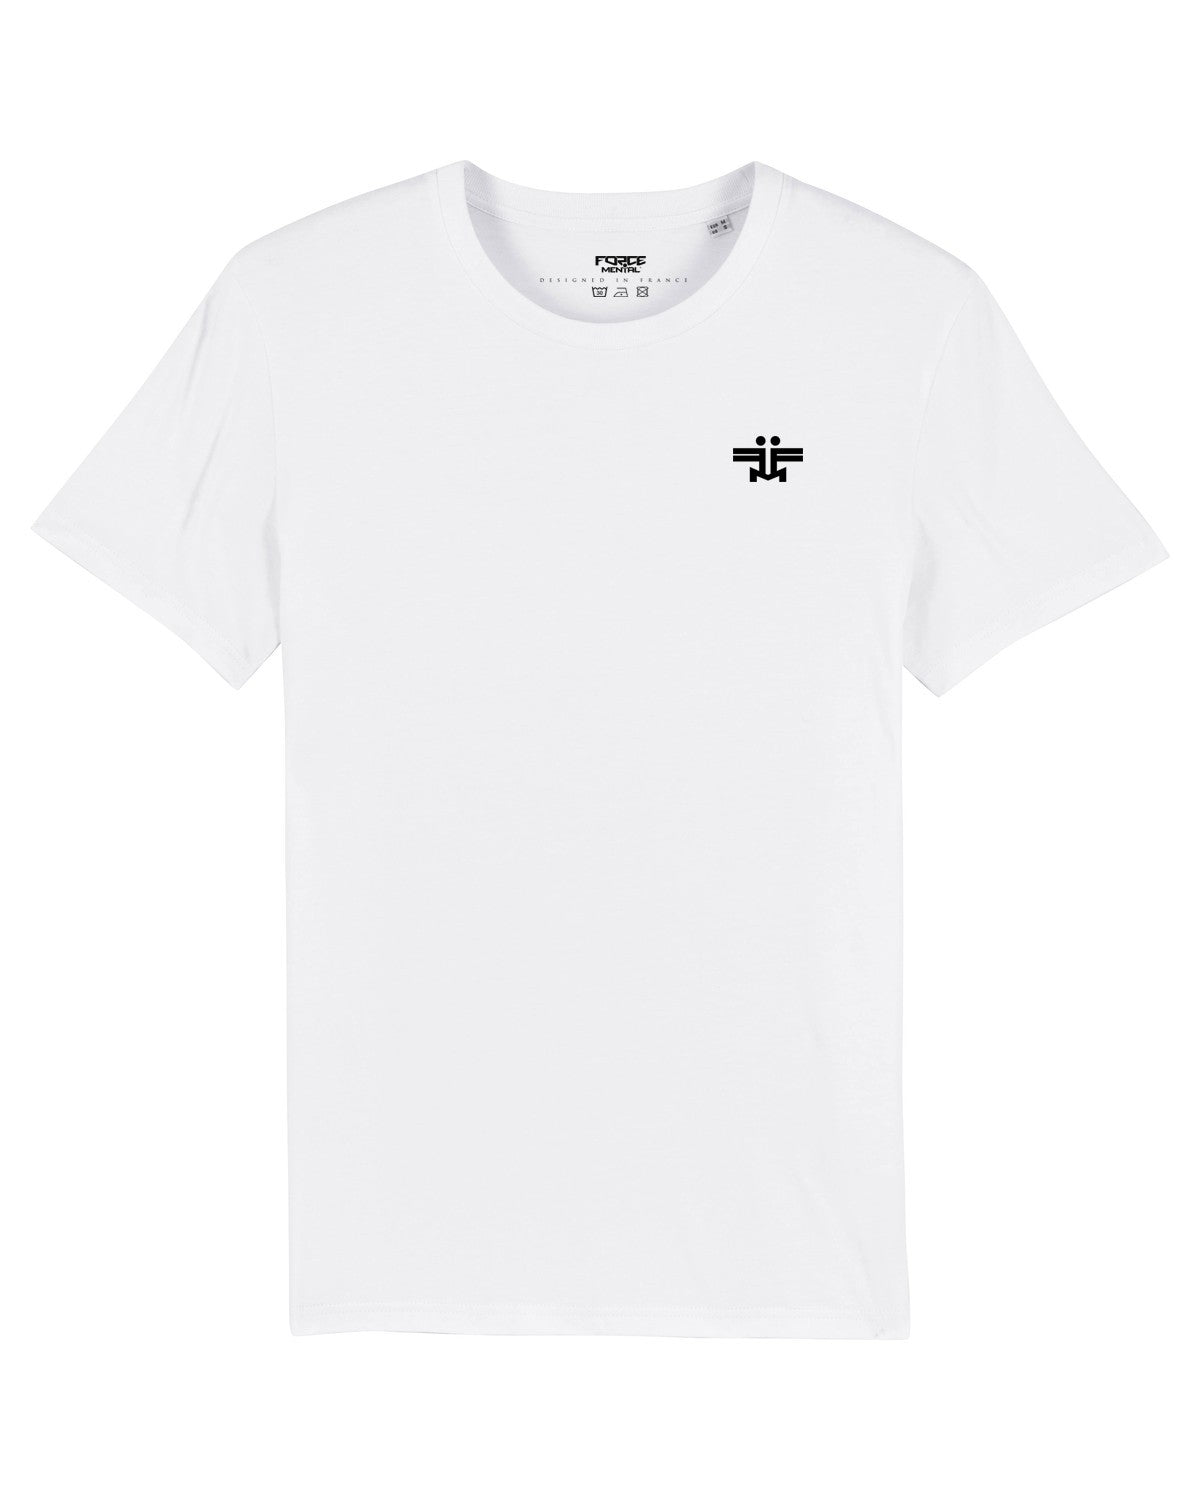 tee-shirt white melrose